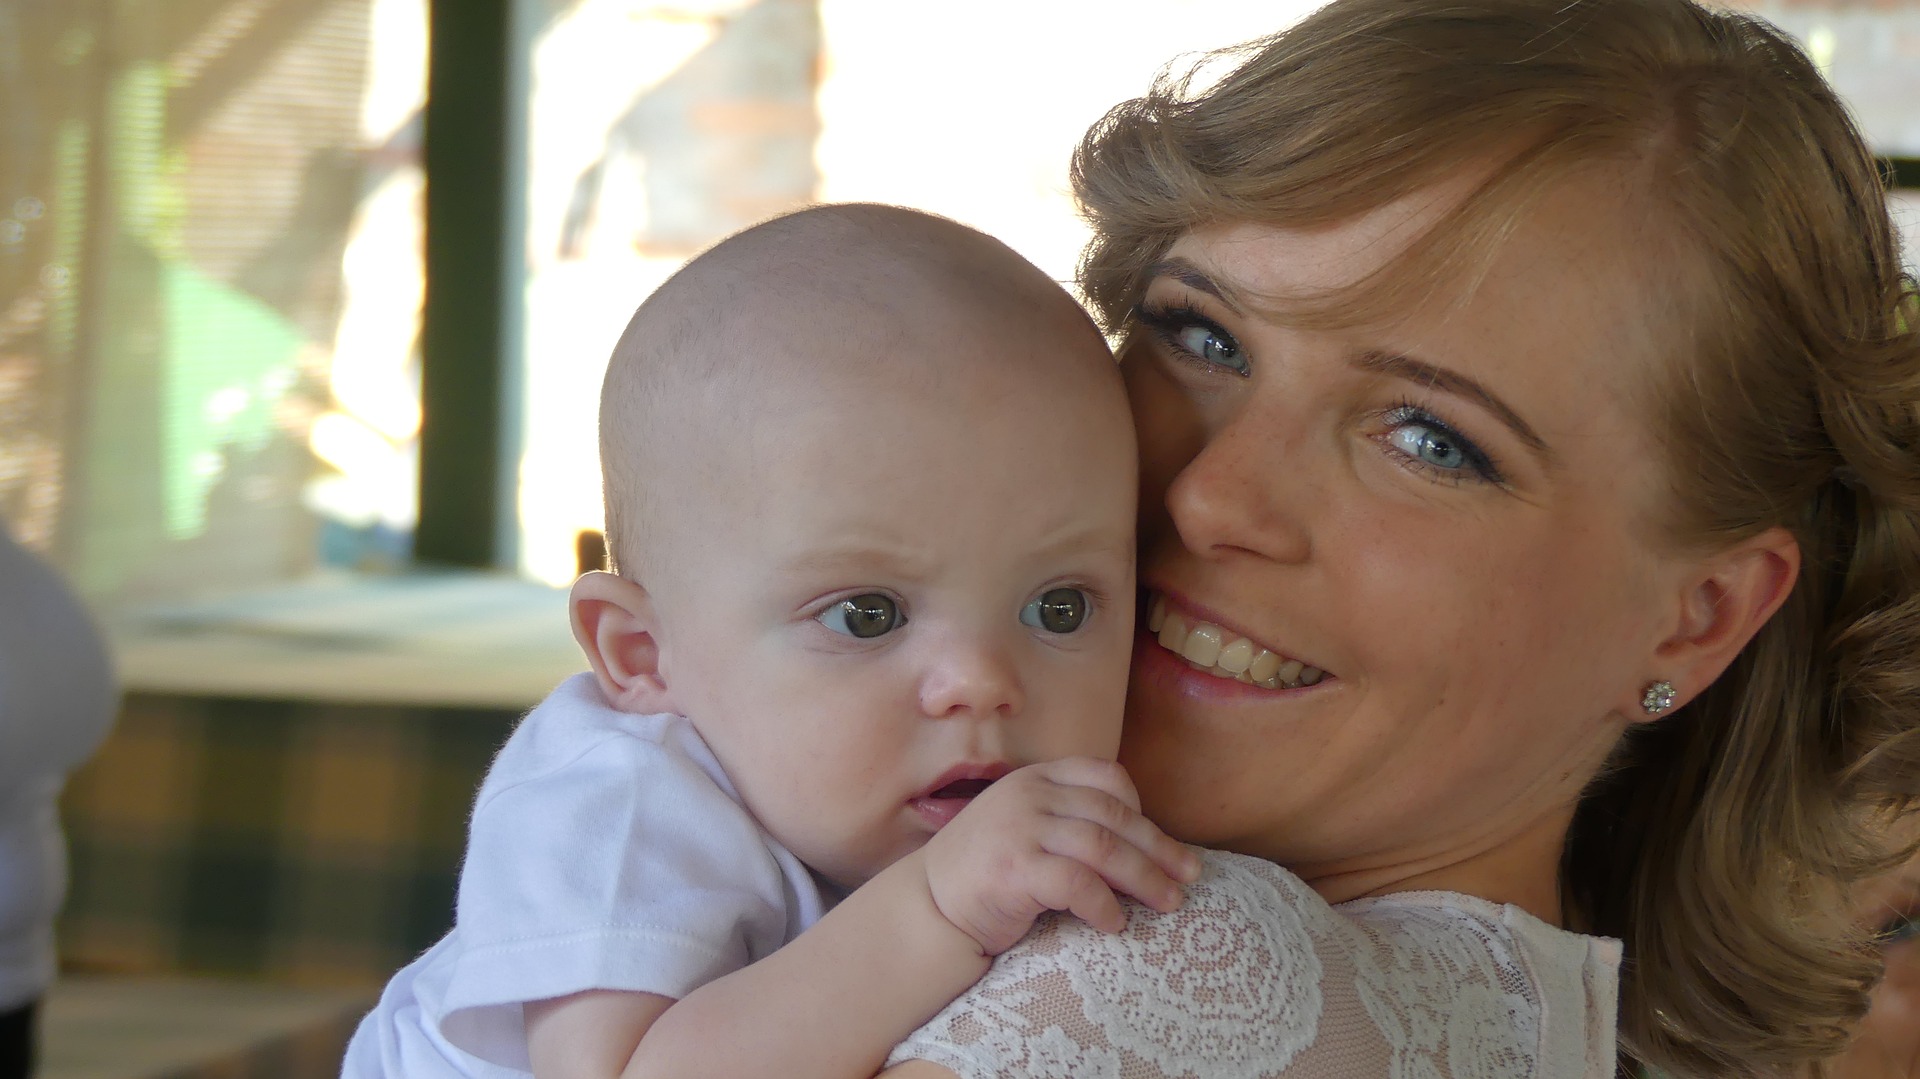 En kvinna håller en bebis nära sitt eget ansikte, bebisen ser nyfiken ut, kvinnan verkar lycklig. 